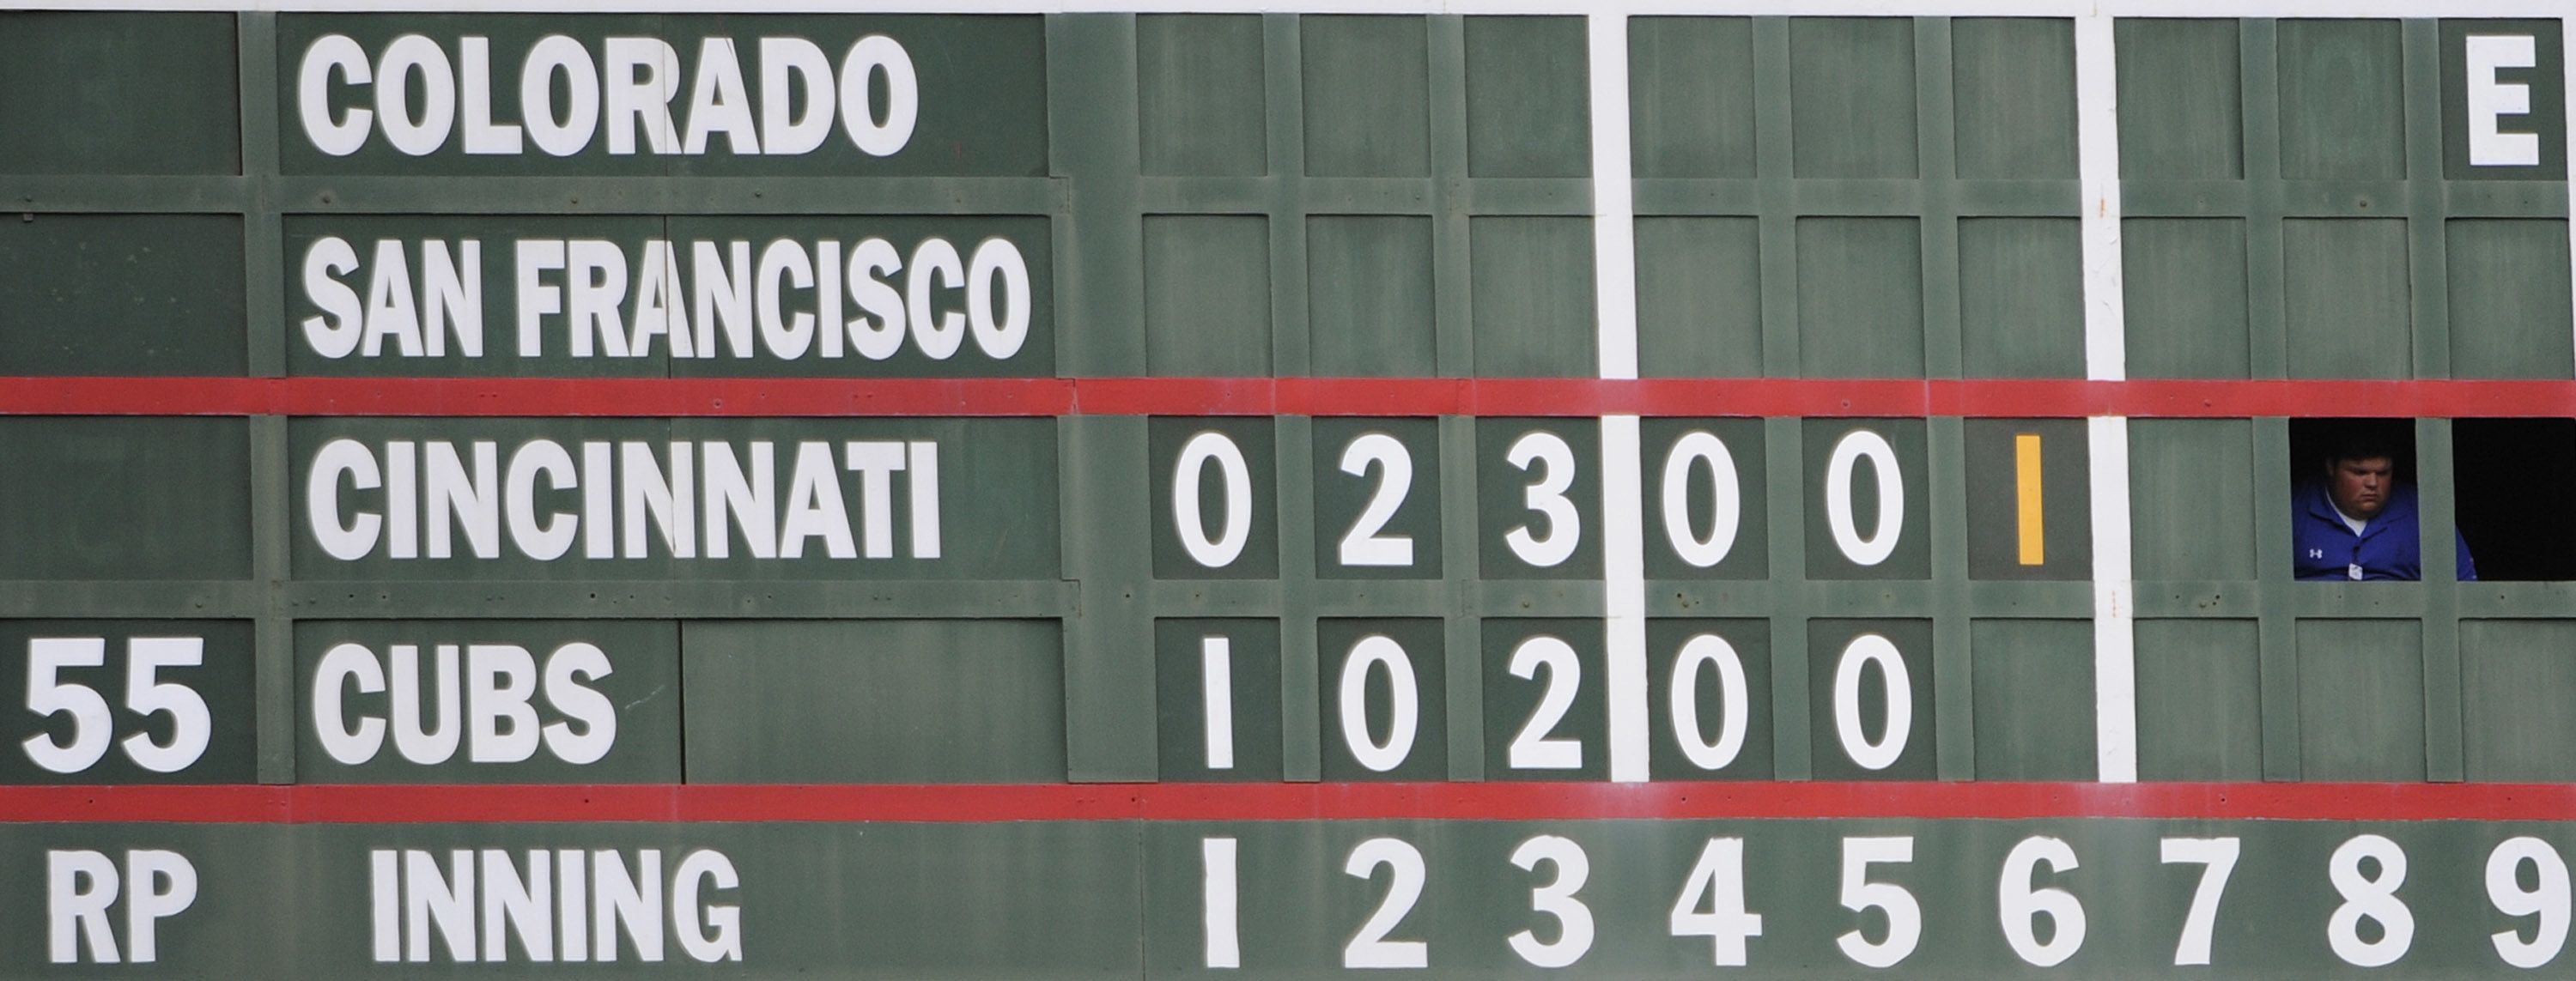 Wrigley Field's historic scoreboard has seen it all